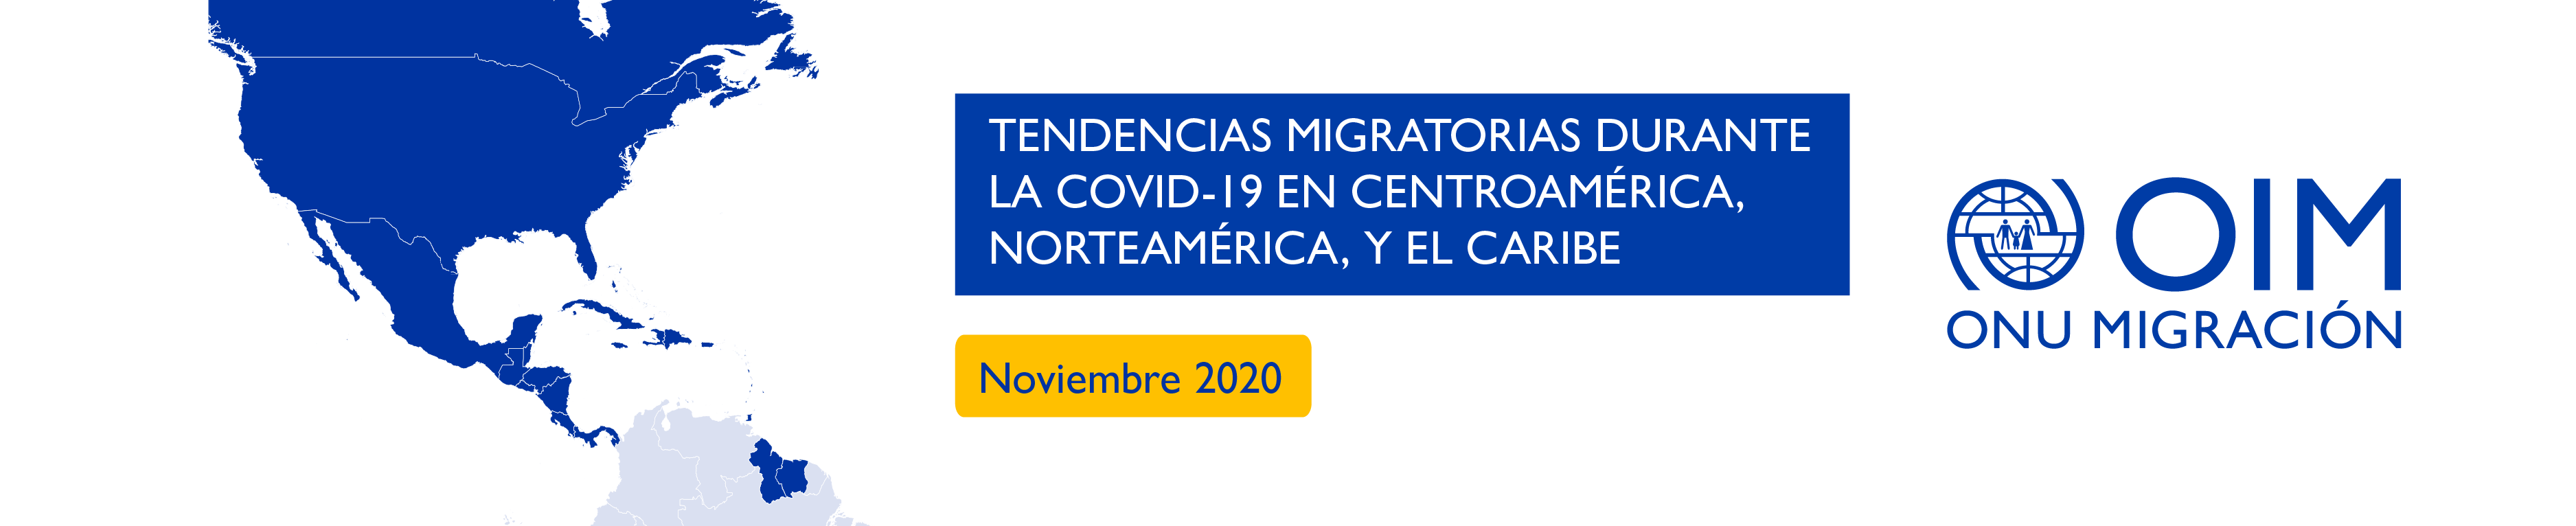 Tendencias migratorias durante la COVID-19 en Centroamérica, Norteamérica, y el Caribe (Noviembre 2020)